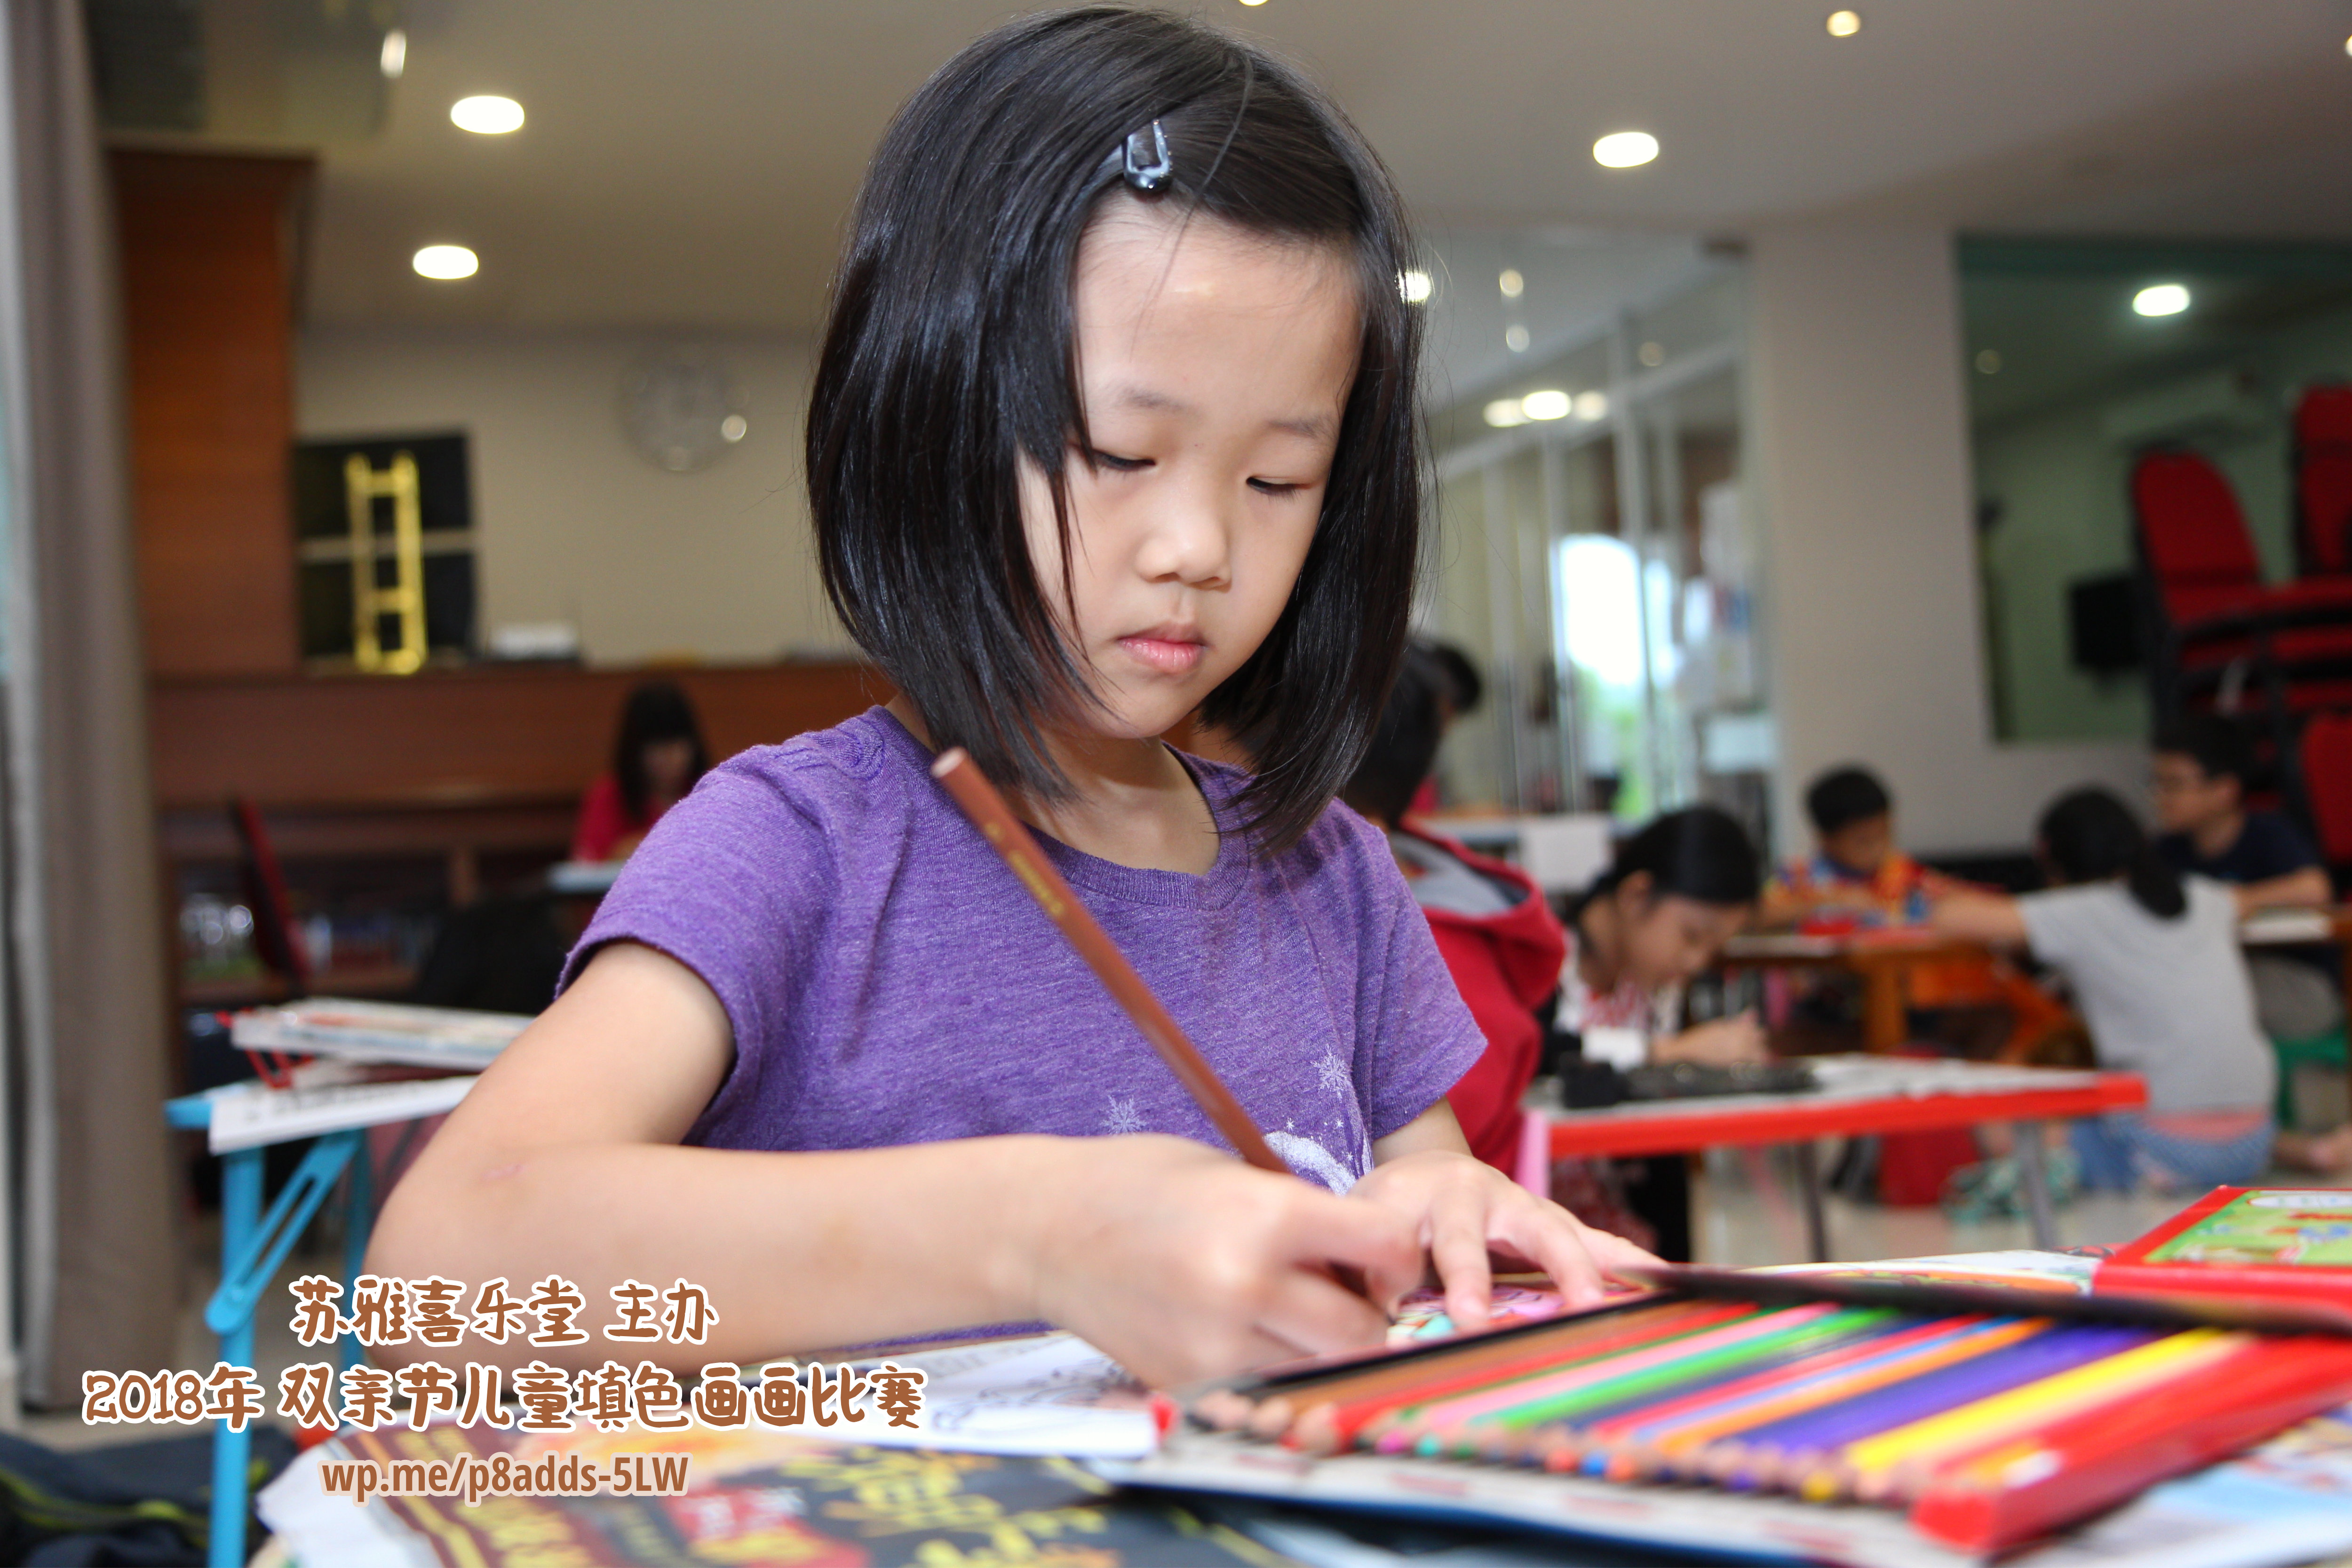 Batu Pahat Gereja Joy Soga Colouring Contest 苏雅喜乐堂主办2018年 峇株巴辖双亲节儿童填色画画比赛 培养儿童对彩色画画的兴趣 发掘美术的潜能 B1-40